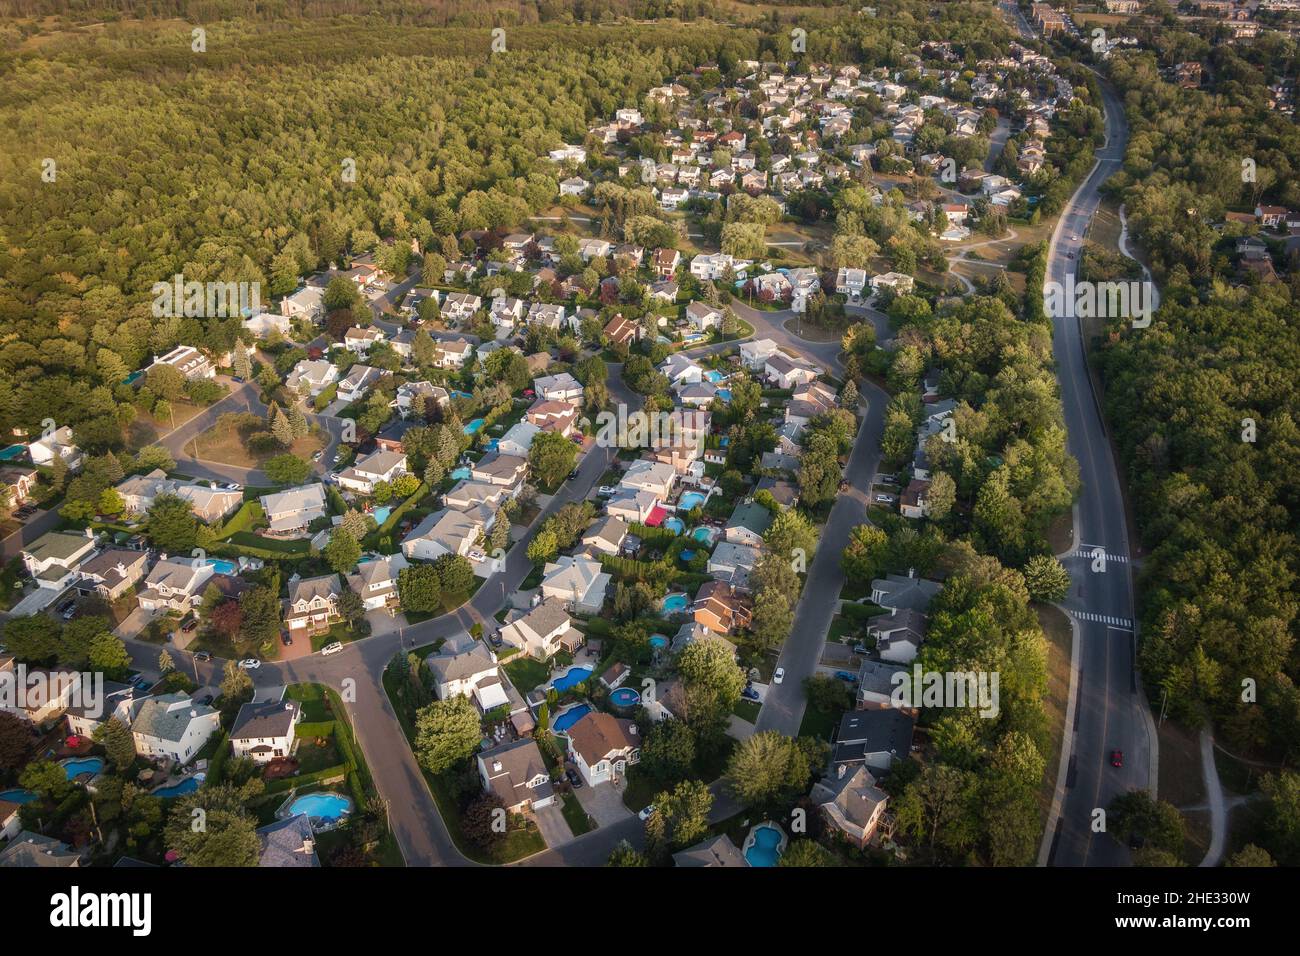 Vista aérea de las casas y calles en el hermoso barrio residencial de Montreal, Quebec, Canadá. Concepto de propiedad, vivienda y bienes raíces. Foto de stock